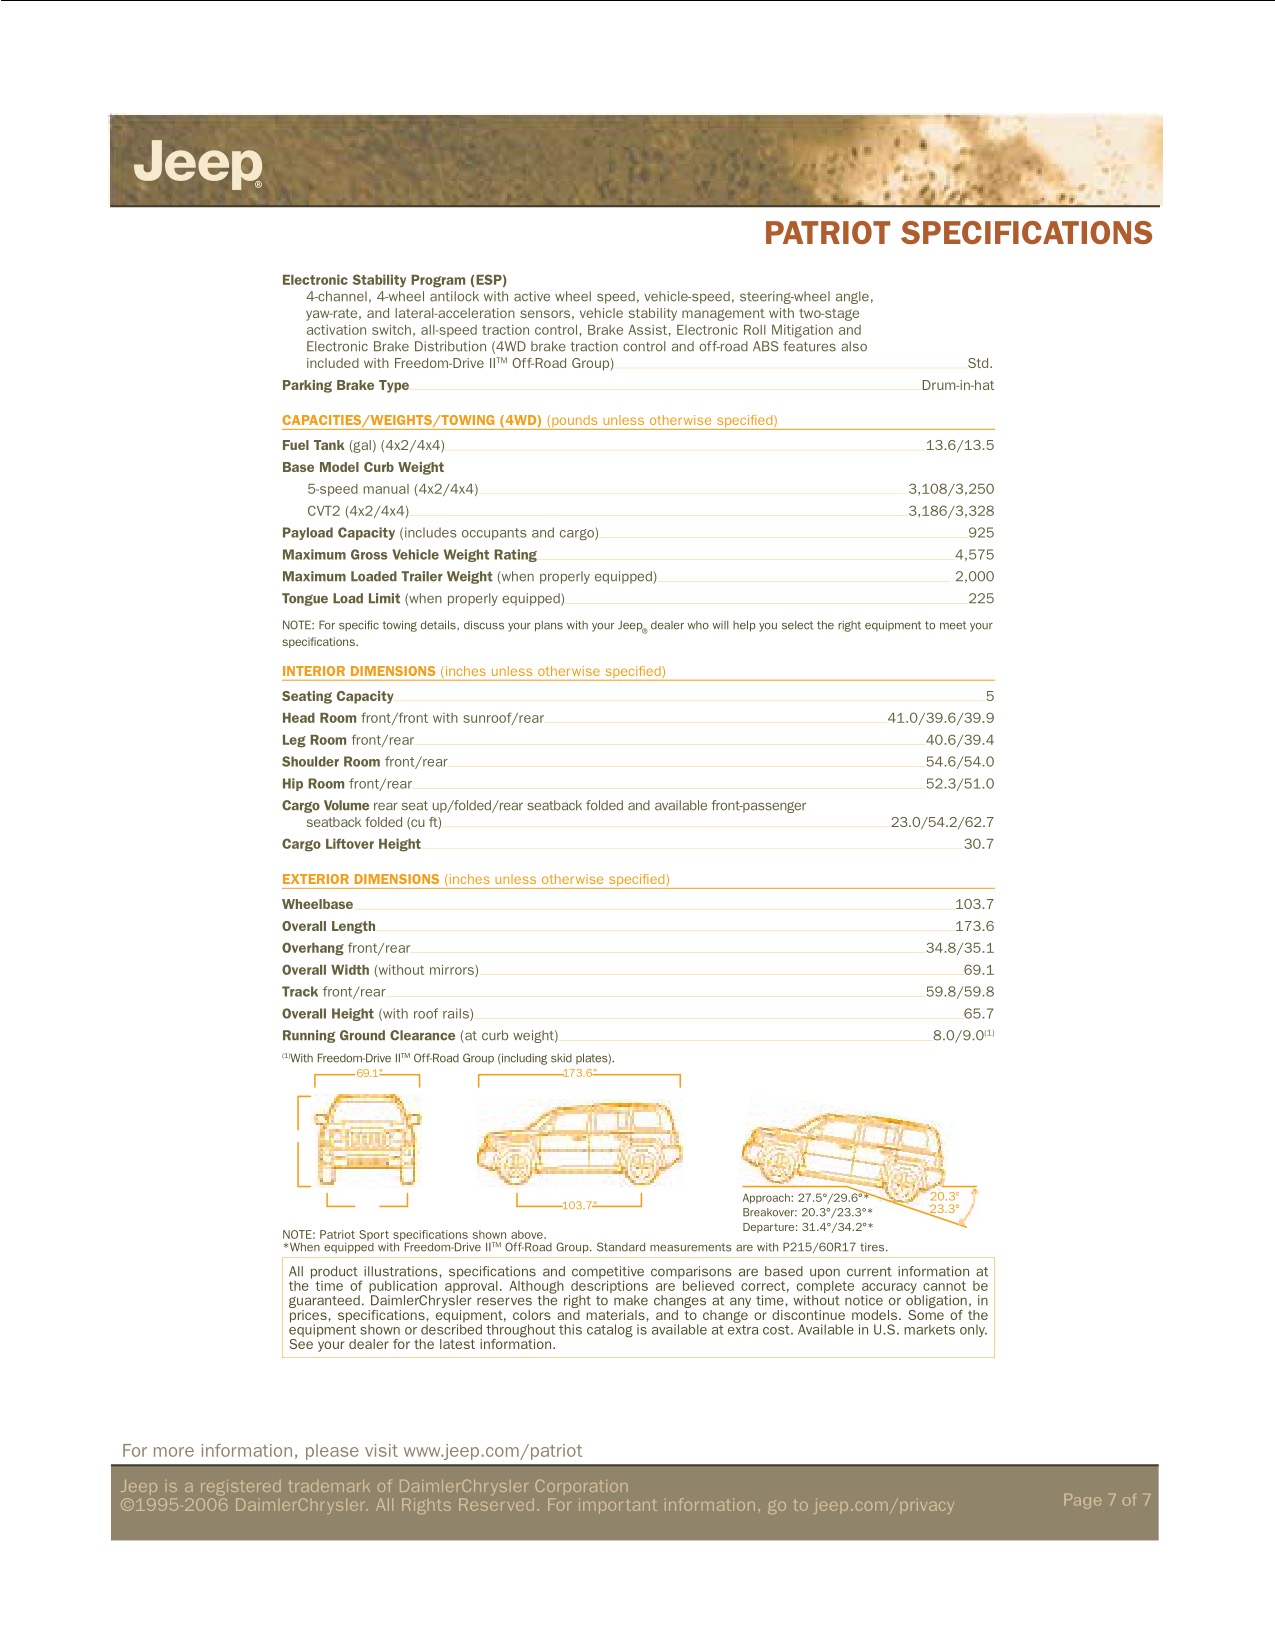 2007 Jeep Patriot Brochure Page 3